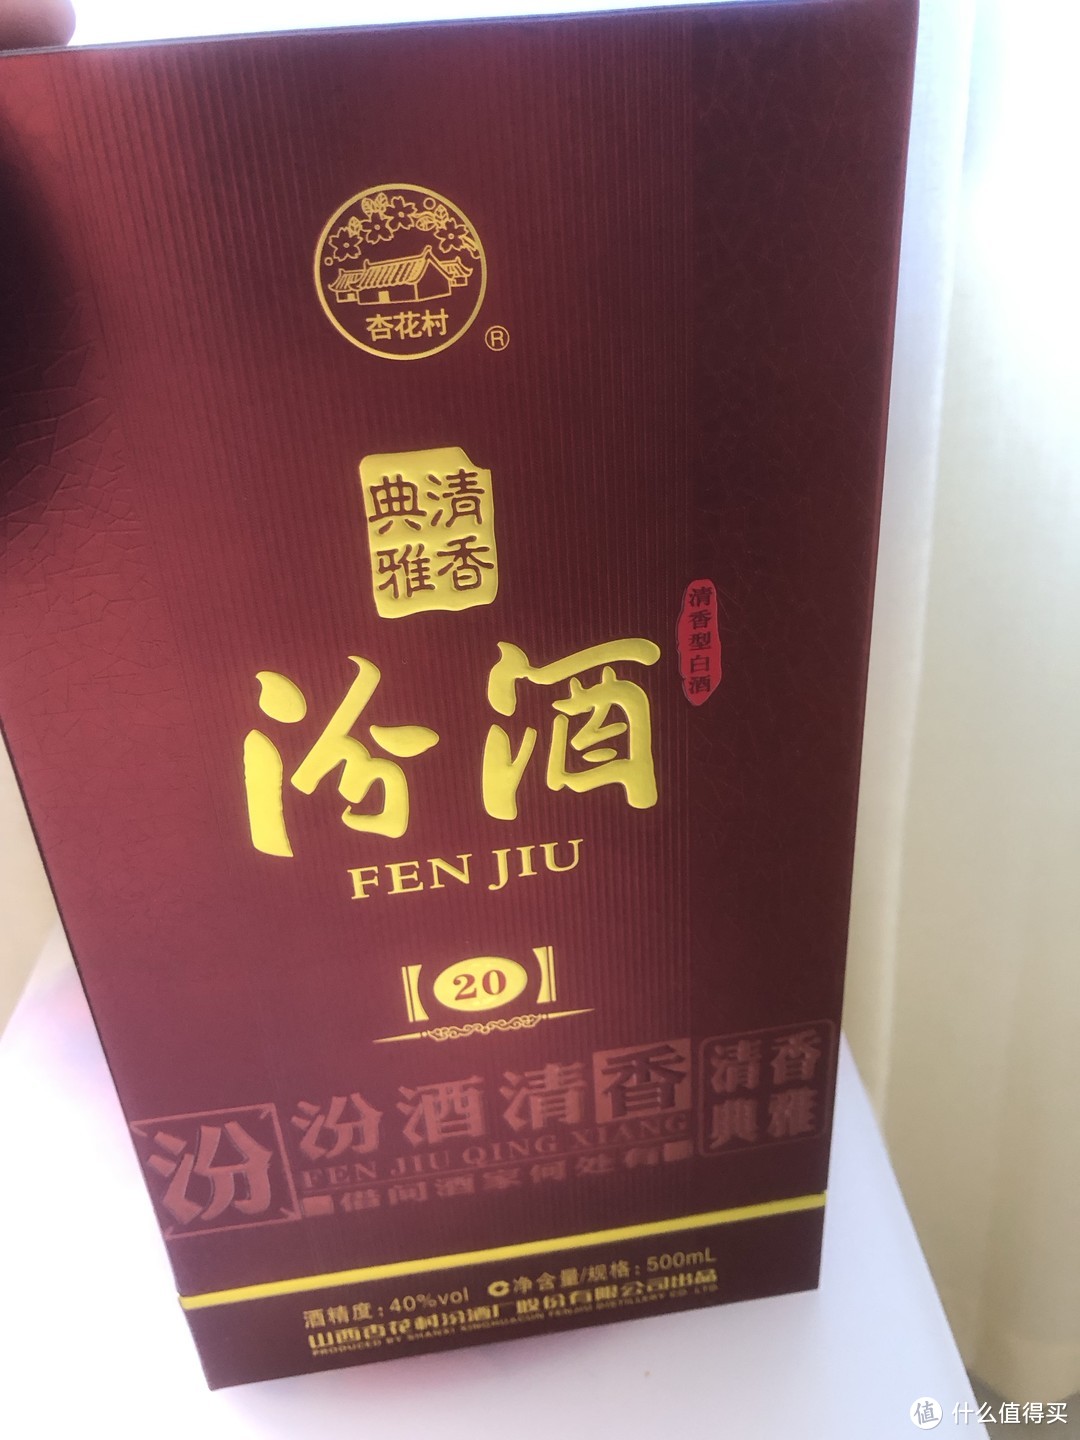 我推荐的是中国酿酒文化的瑰宝、“汾酒”